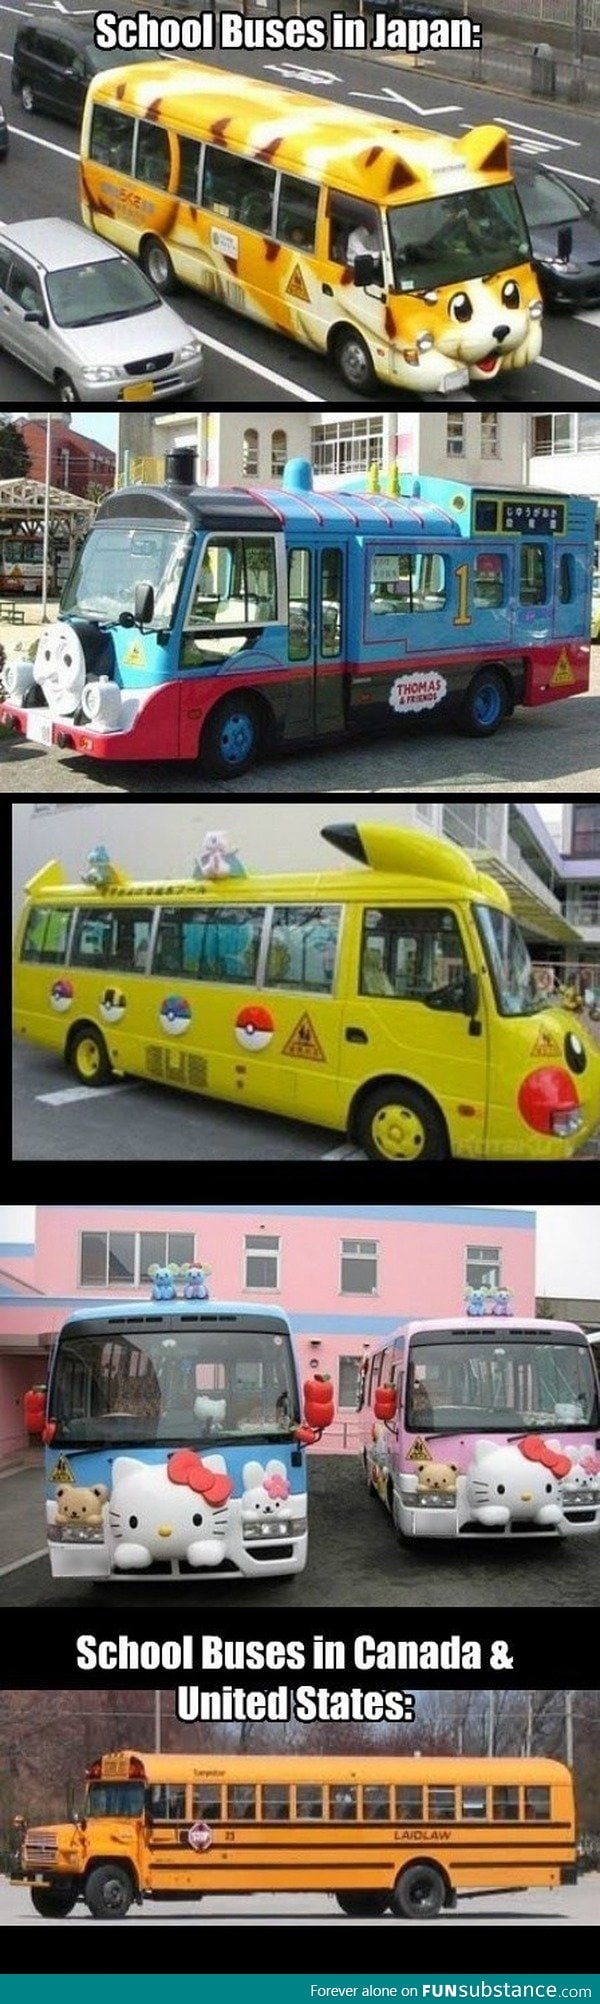 Japanese school buses